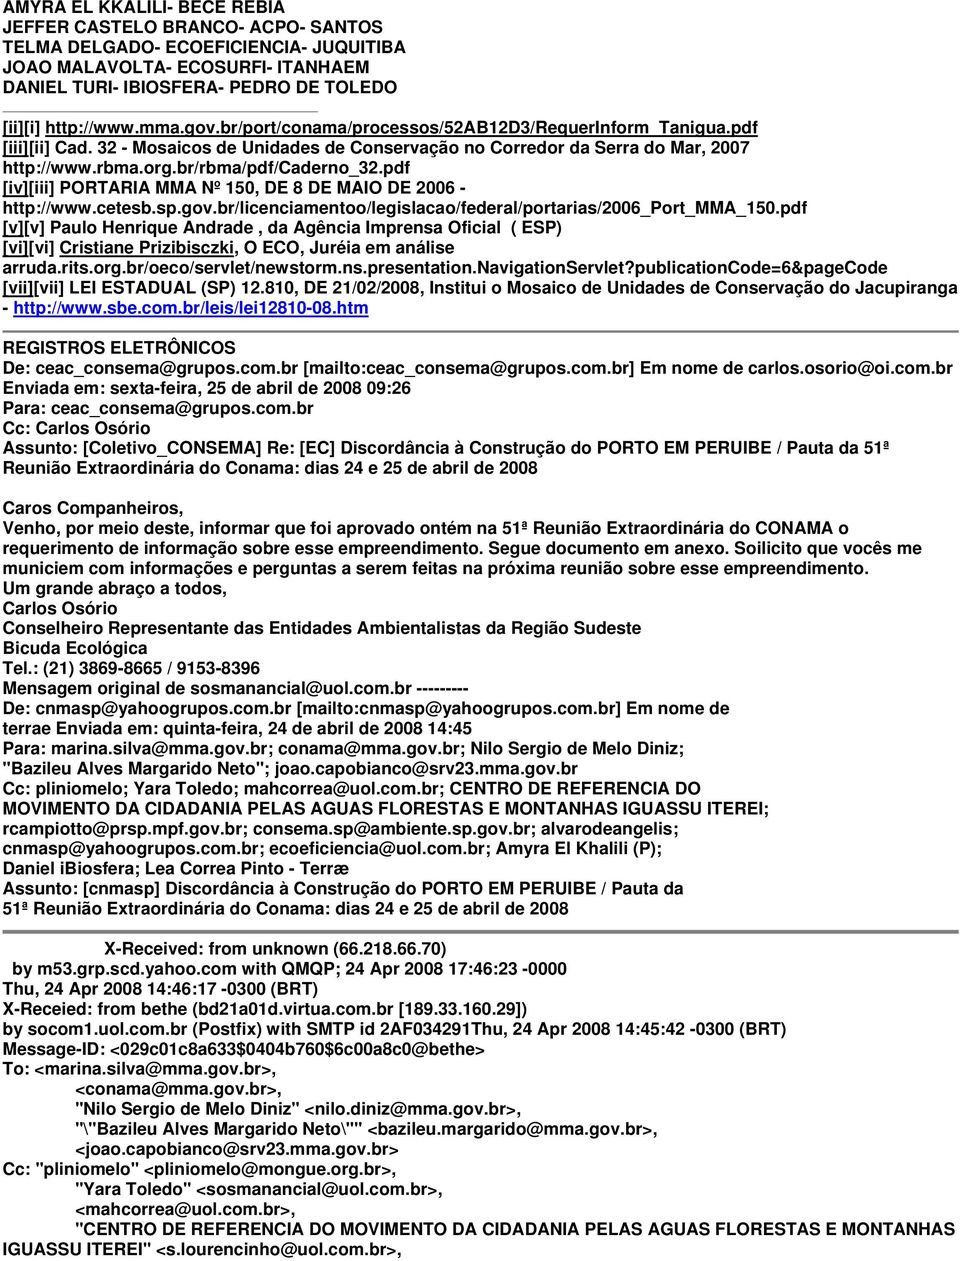 pdf [iv][iii] PORTARIA MMA Nº 150, DE 8 DE MAIO DE 2006 - http://www.cetesb.sp.gov.br/licenciamentoo/legislacao/federal/portarias/2006_port_mma_150.